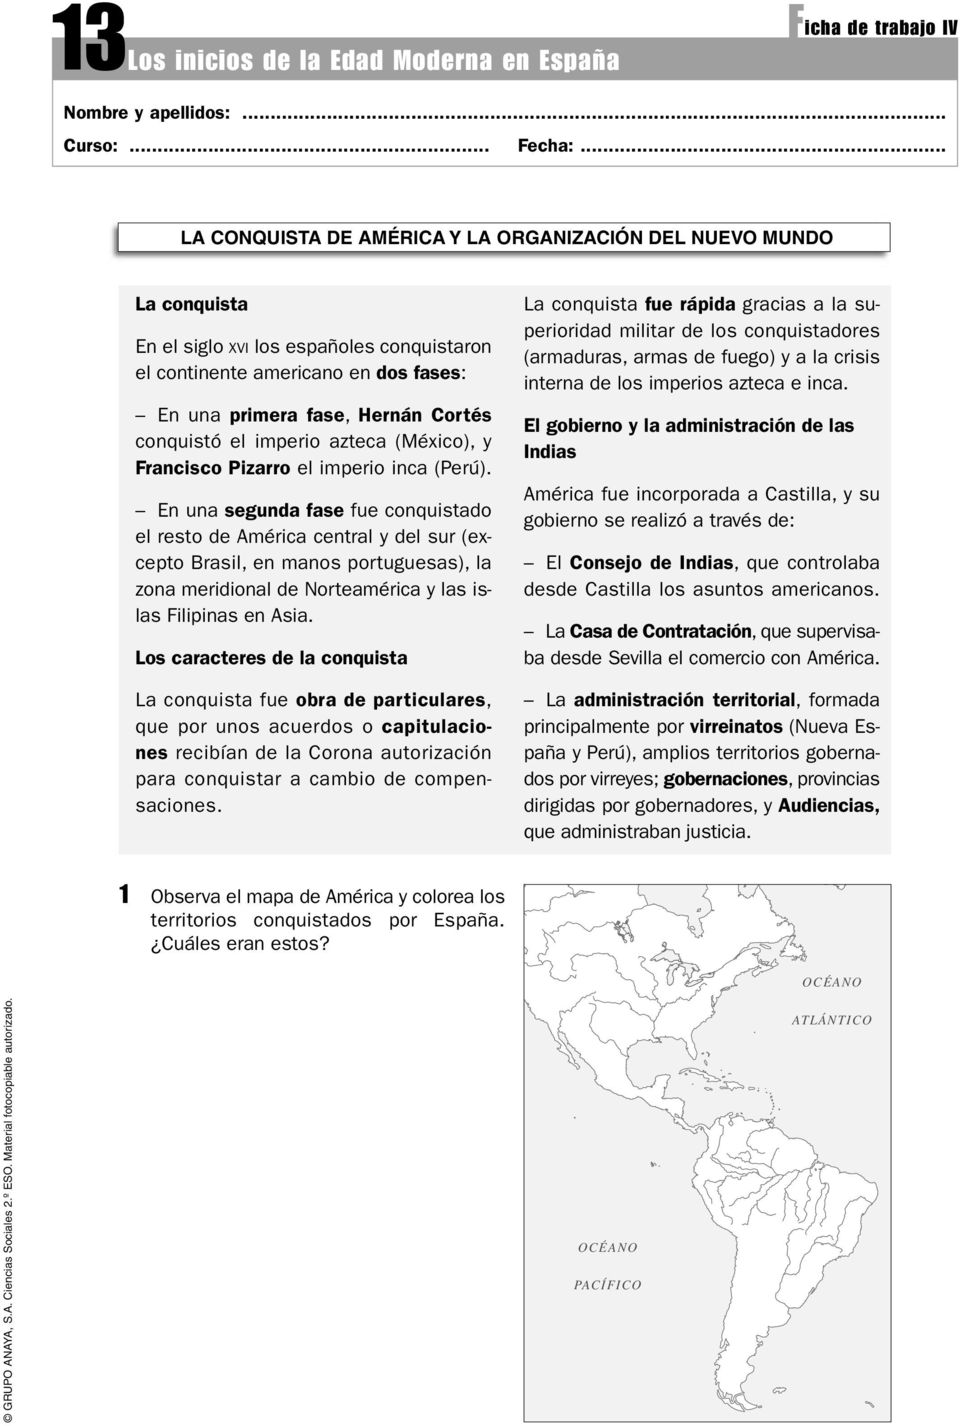 el imperio azteca (México), y Francisco Pizarro el imperio inca (Perú).